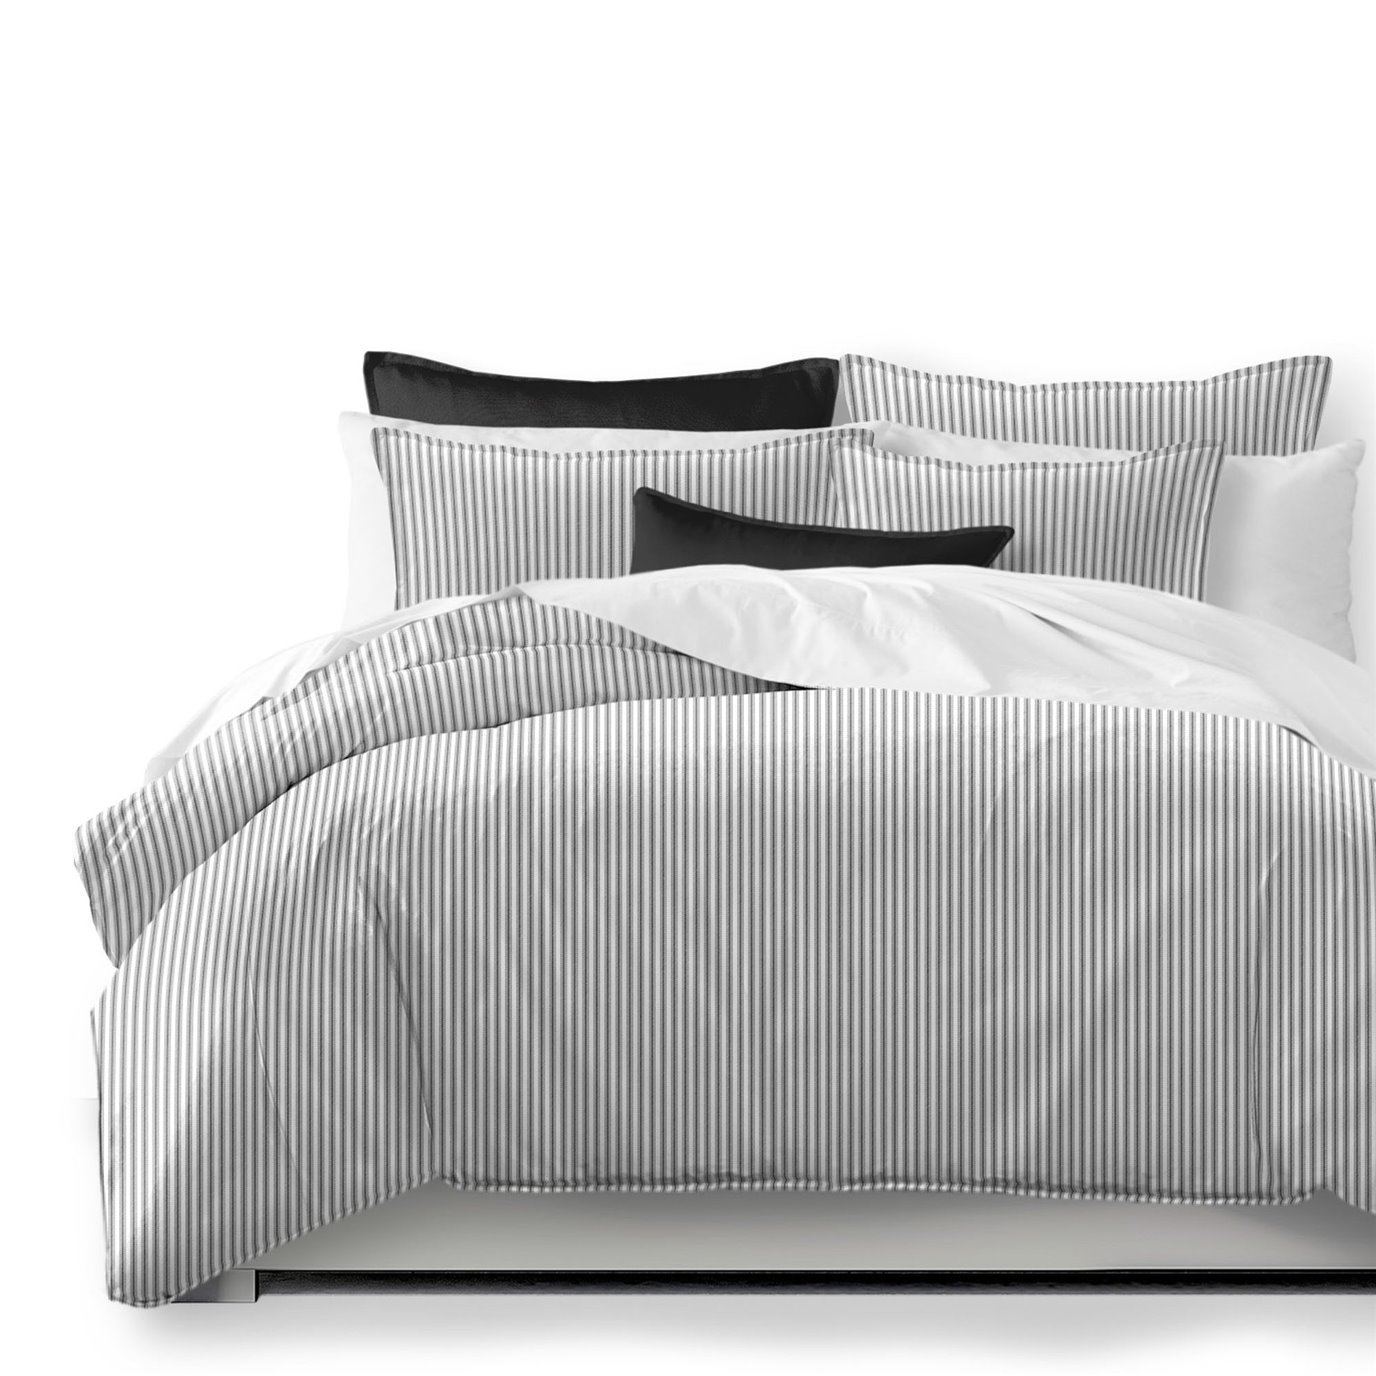 Cruz Ticking Stripes White/Black Duvet Cover and Pillow Sham(s) Set - Size Full